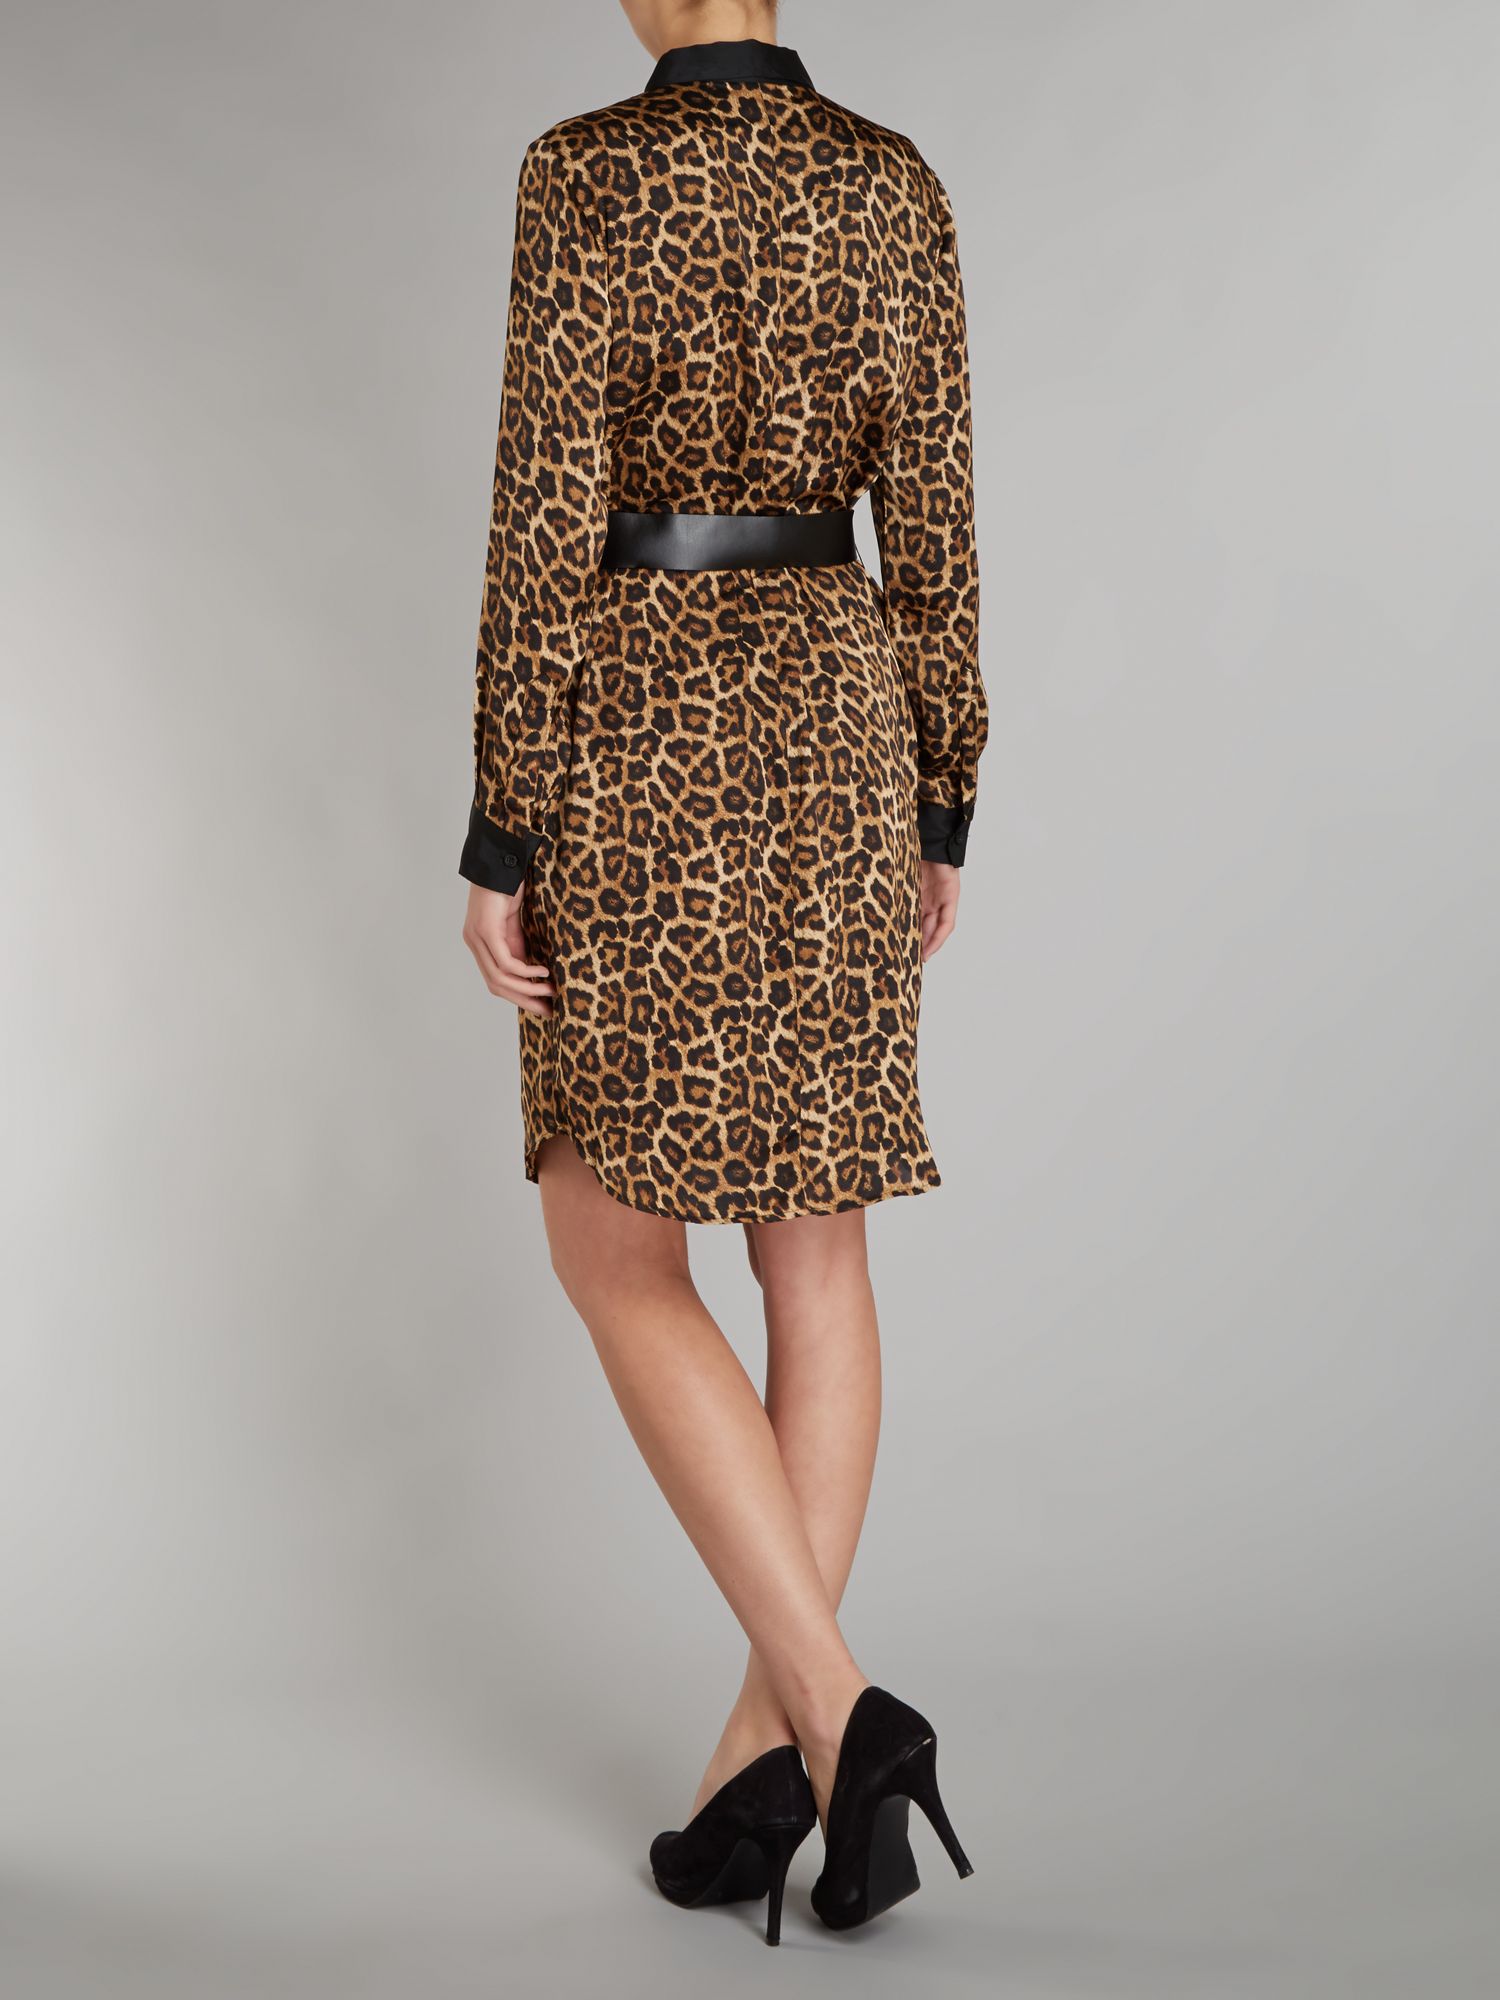 Michael kors Leopard Print Shirt Dress with Belt | Lyst